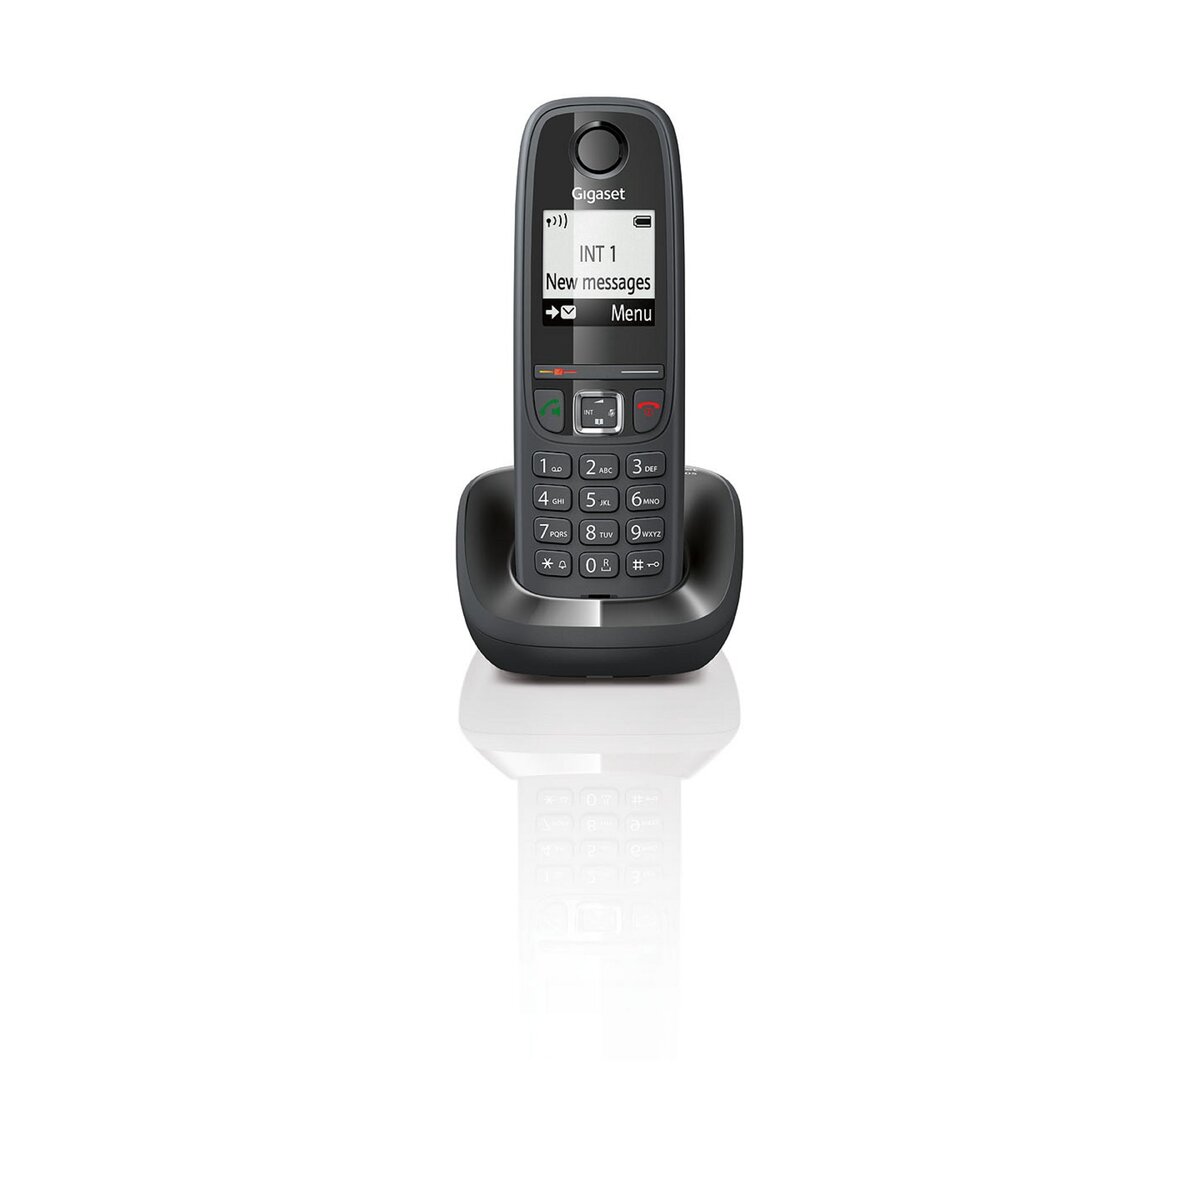 GIGASET Téléphone sans fil DUO - AS405 - Noir pas cher 